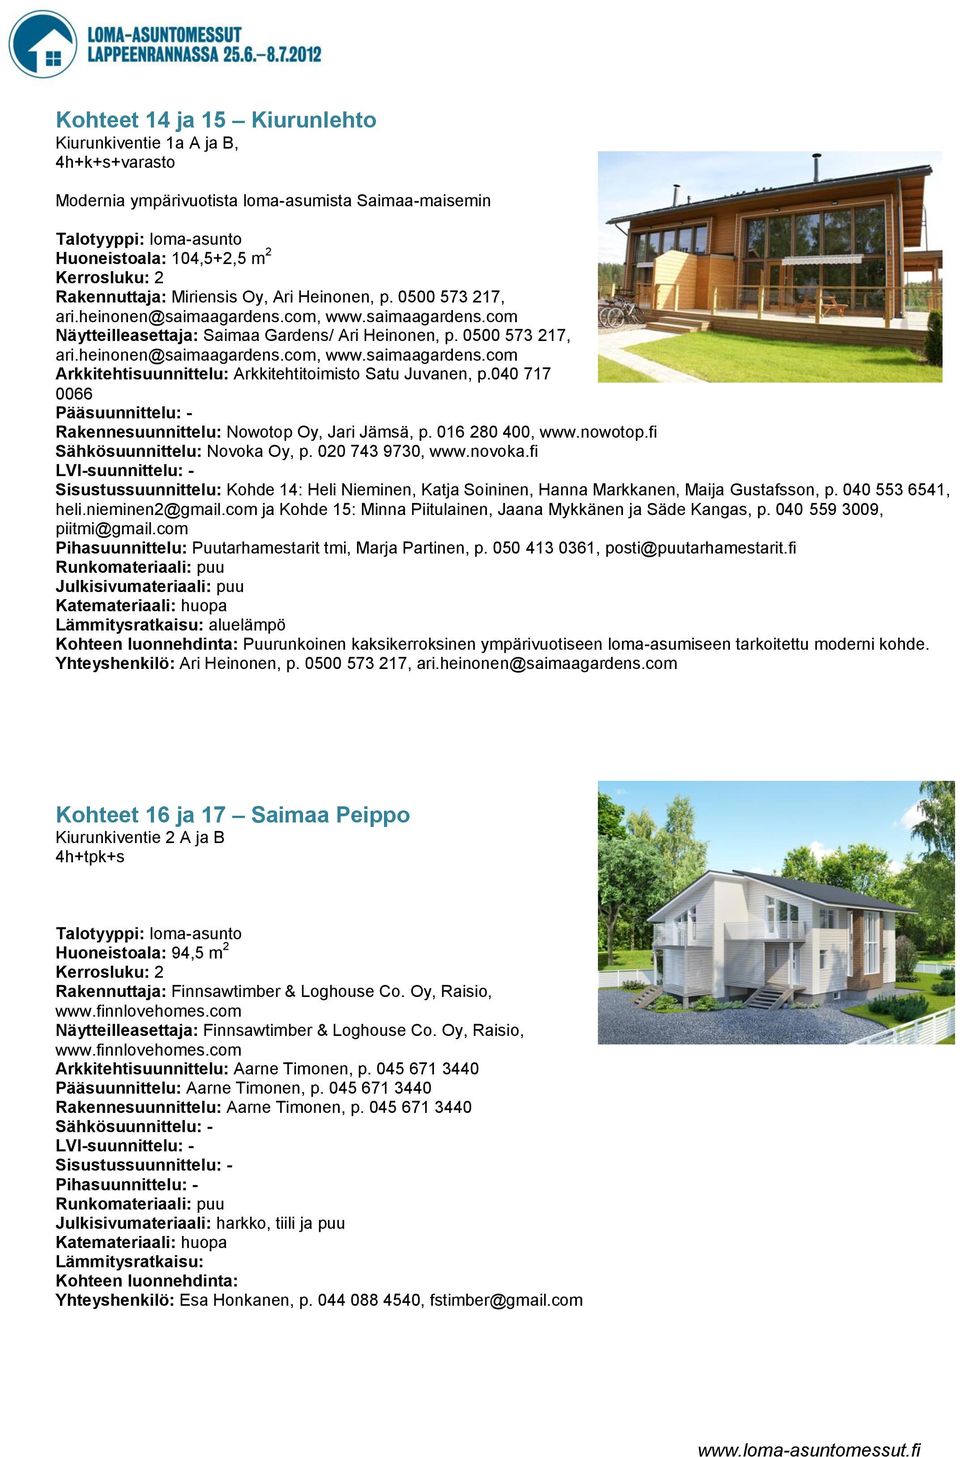 040 717 0066 Pääsuunnittelu: - Rakennesuunnittelu: Nowotop Oy, Jari Jämsä, p. 016 280 400, www.nowotop.fi Sähkösuunnittelu: Novoka Oy, p. 020 743 9730, www.novoka.